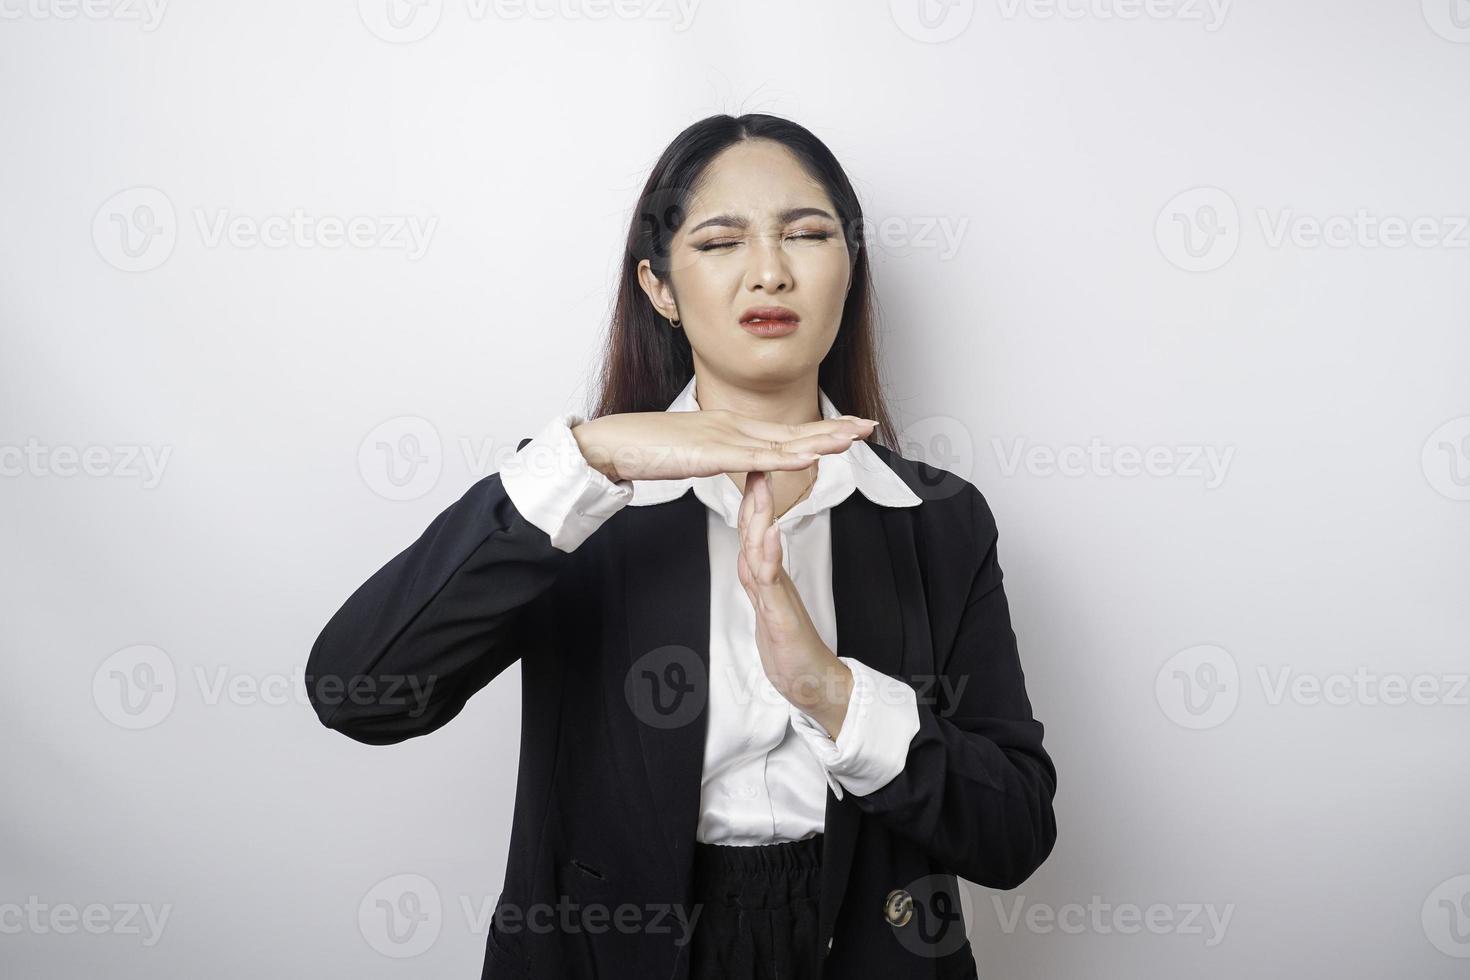 empresária asiática hispânica vestindo terno preto fazendo gesto de tempo com as mãos, rosto sério e frustrado foto